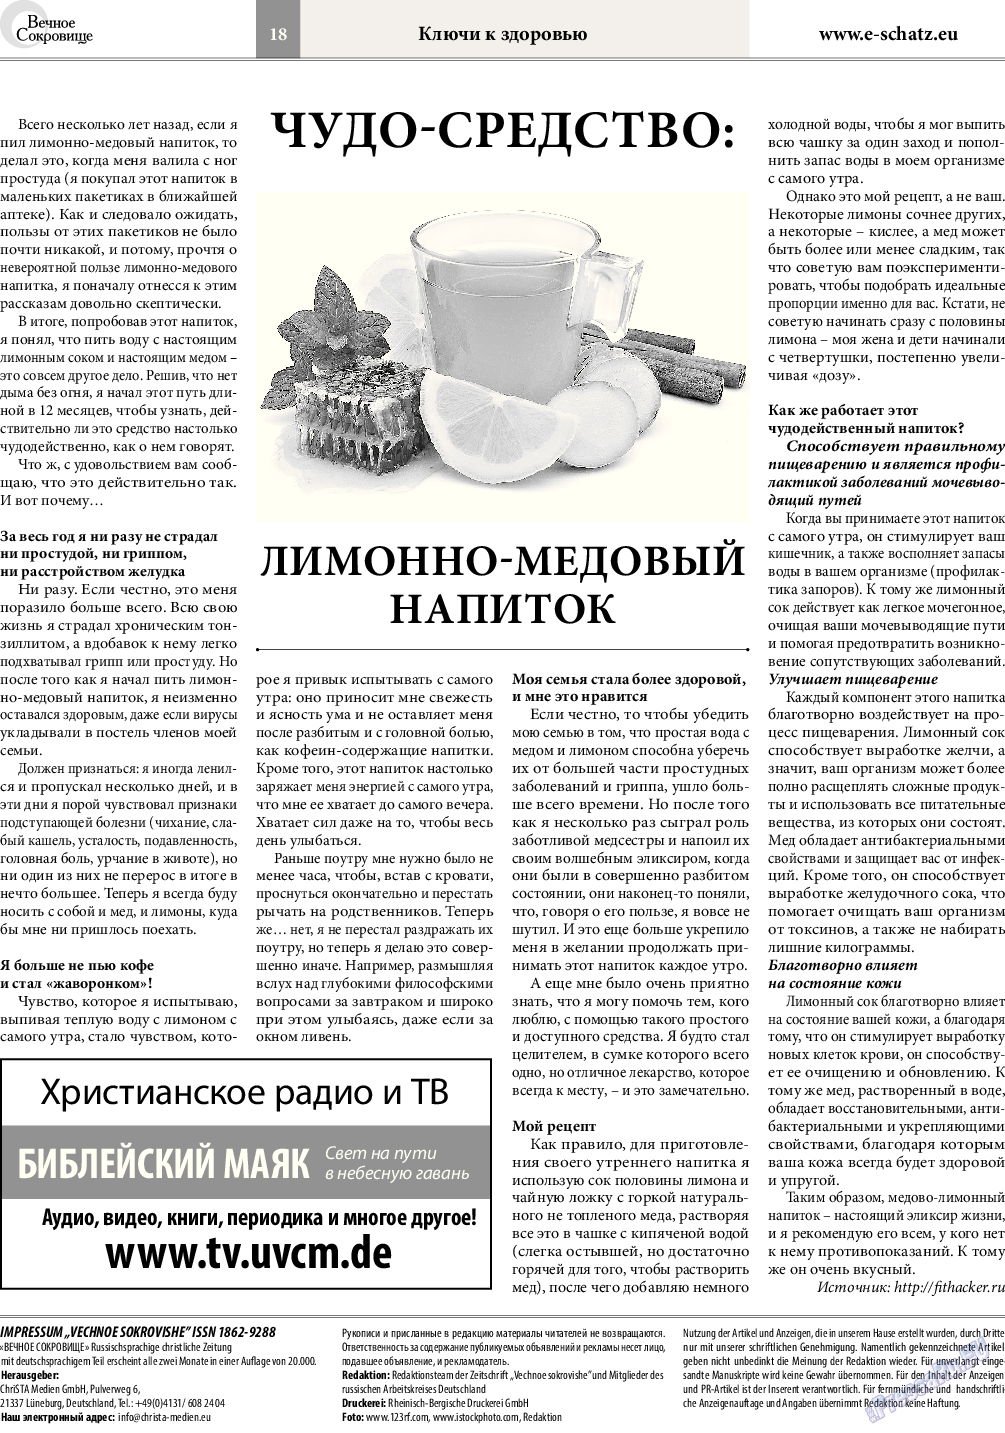 Вечное сокровище, газета. 2015 №2 стр.18